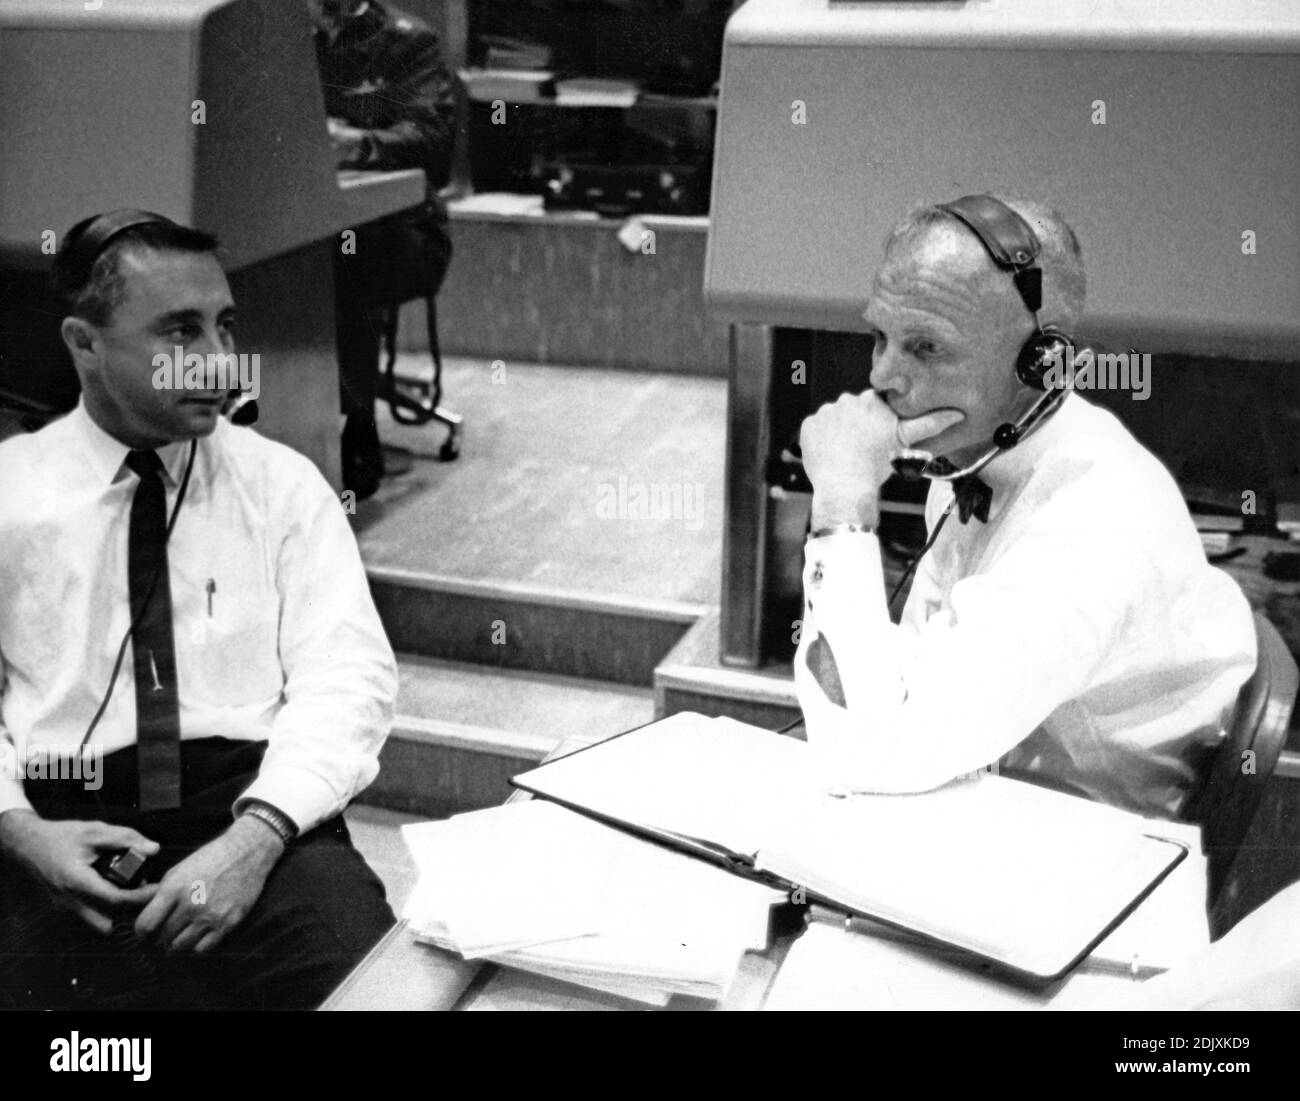 Erfahrene US-Raumfahrer erwarten Wort vom Projekt Mercury Astronaut M. Scott Carpenter, als er nach 3 Reisen rund um den Globus in Cape Canaveral, Florida, 24. Mai 1962 auf die Erde zurückkehrt. Links; Virgil I. 'Gus' Grissom, Pilot von Merkurs zweiter Suborbitalmission, und rechts; John H. Glenn, Jr., erster US-Orbitalastronaut. Grisson diente als Capsule Communicator, unterstützt von Glenn, während Carpenter's Flug.Foto von NASA via CNP/ABACAPRESS.COM Stockfoto